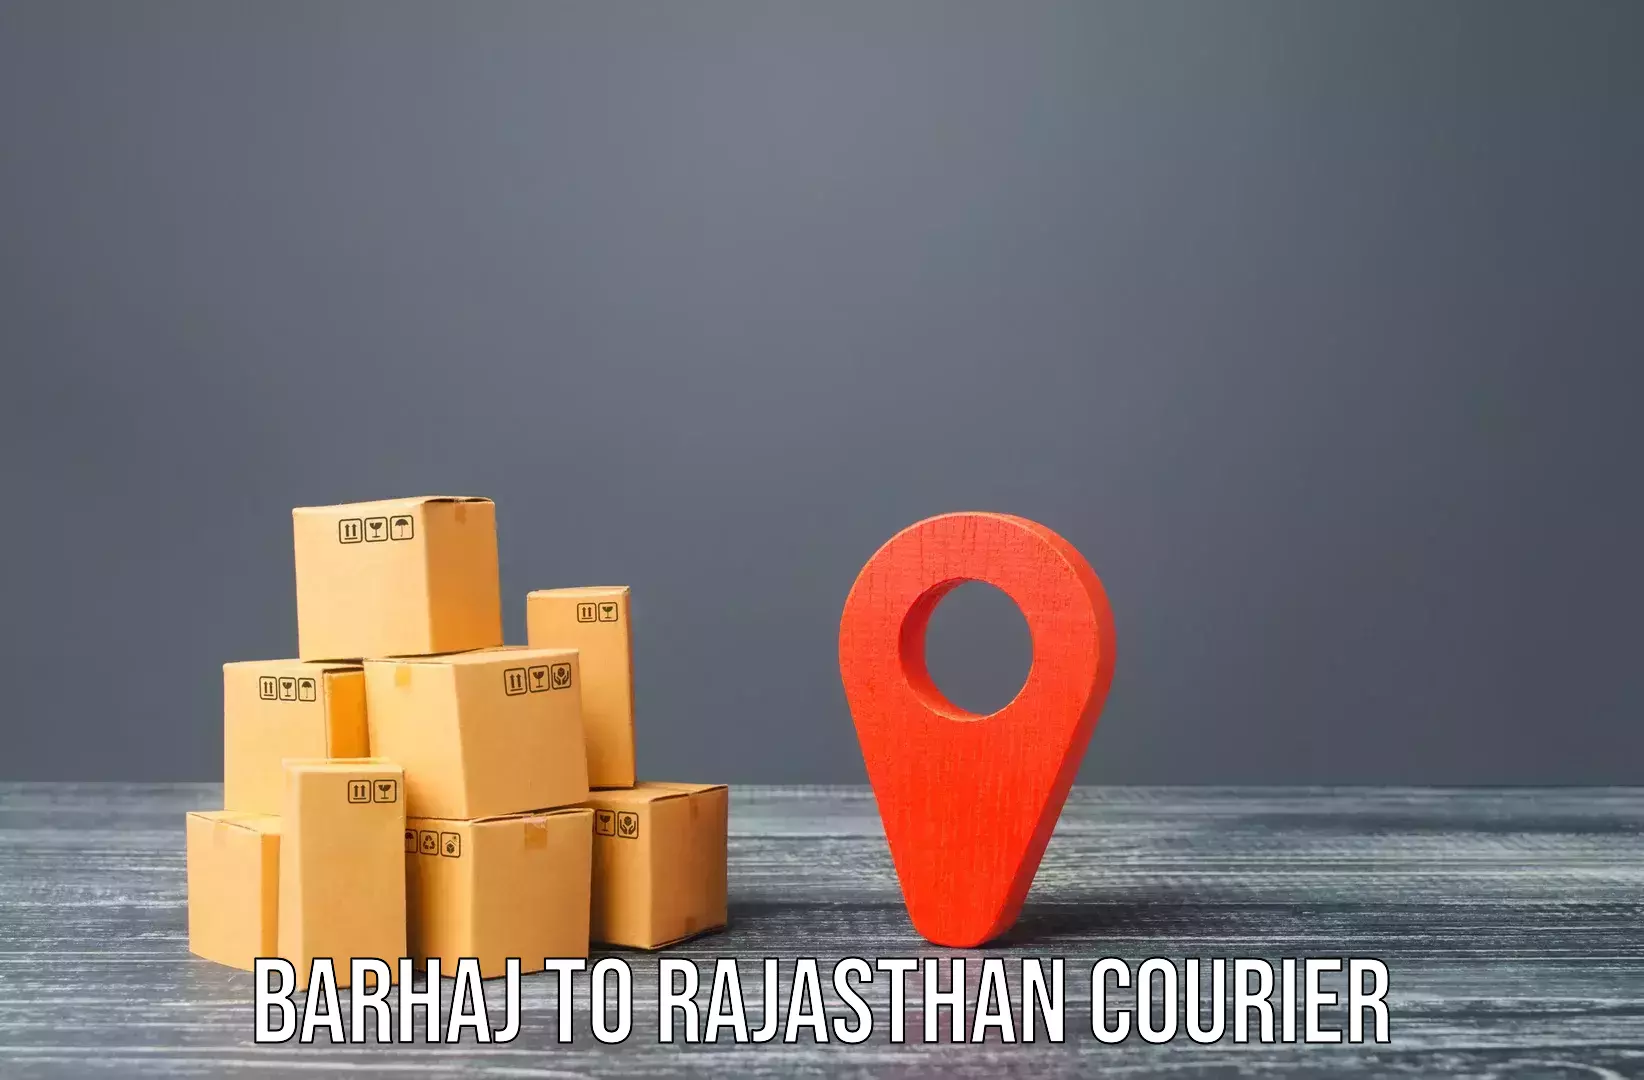 Quality moving services Barhaj to Banar